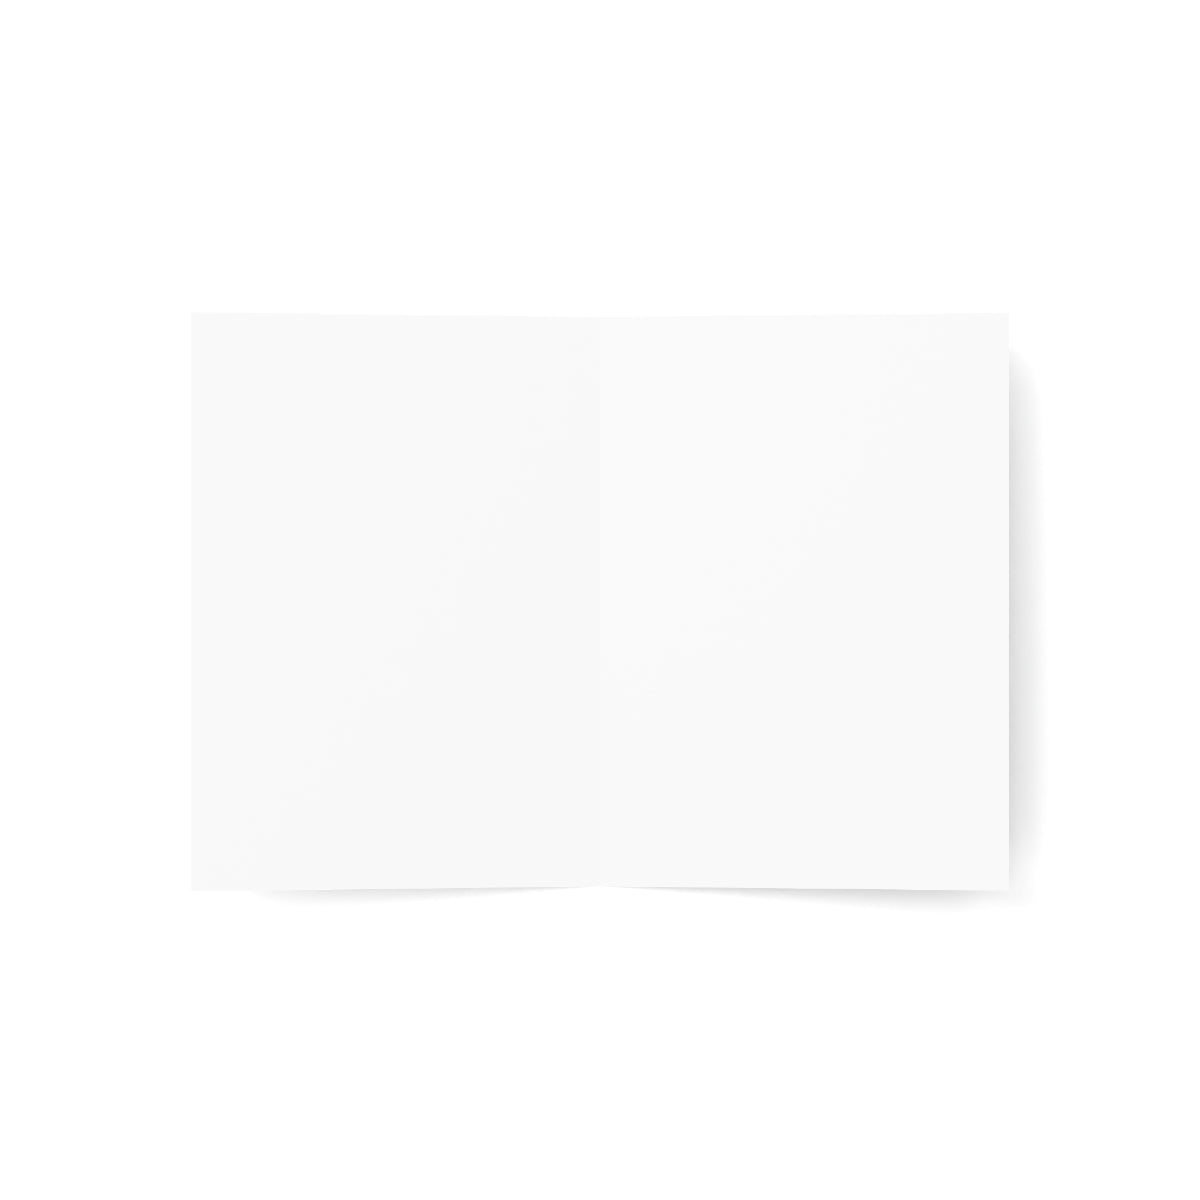 Cartes de notes mates pliées Narragansett + enveloppes (10 pièces)